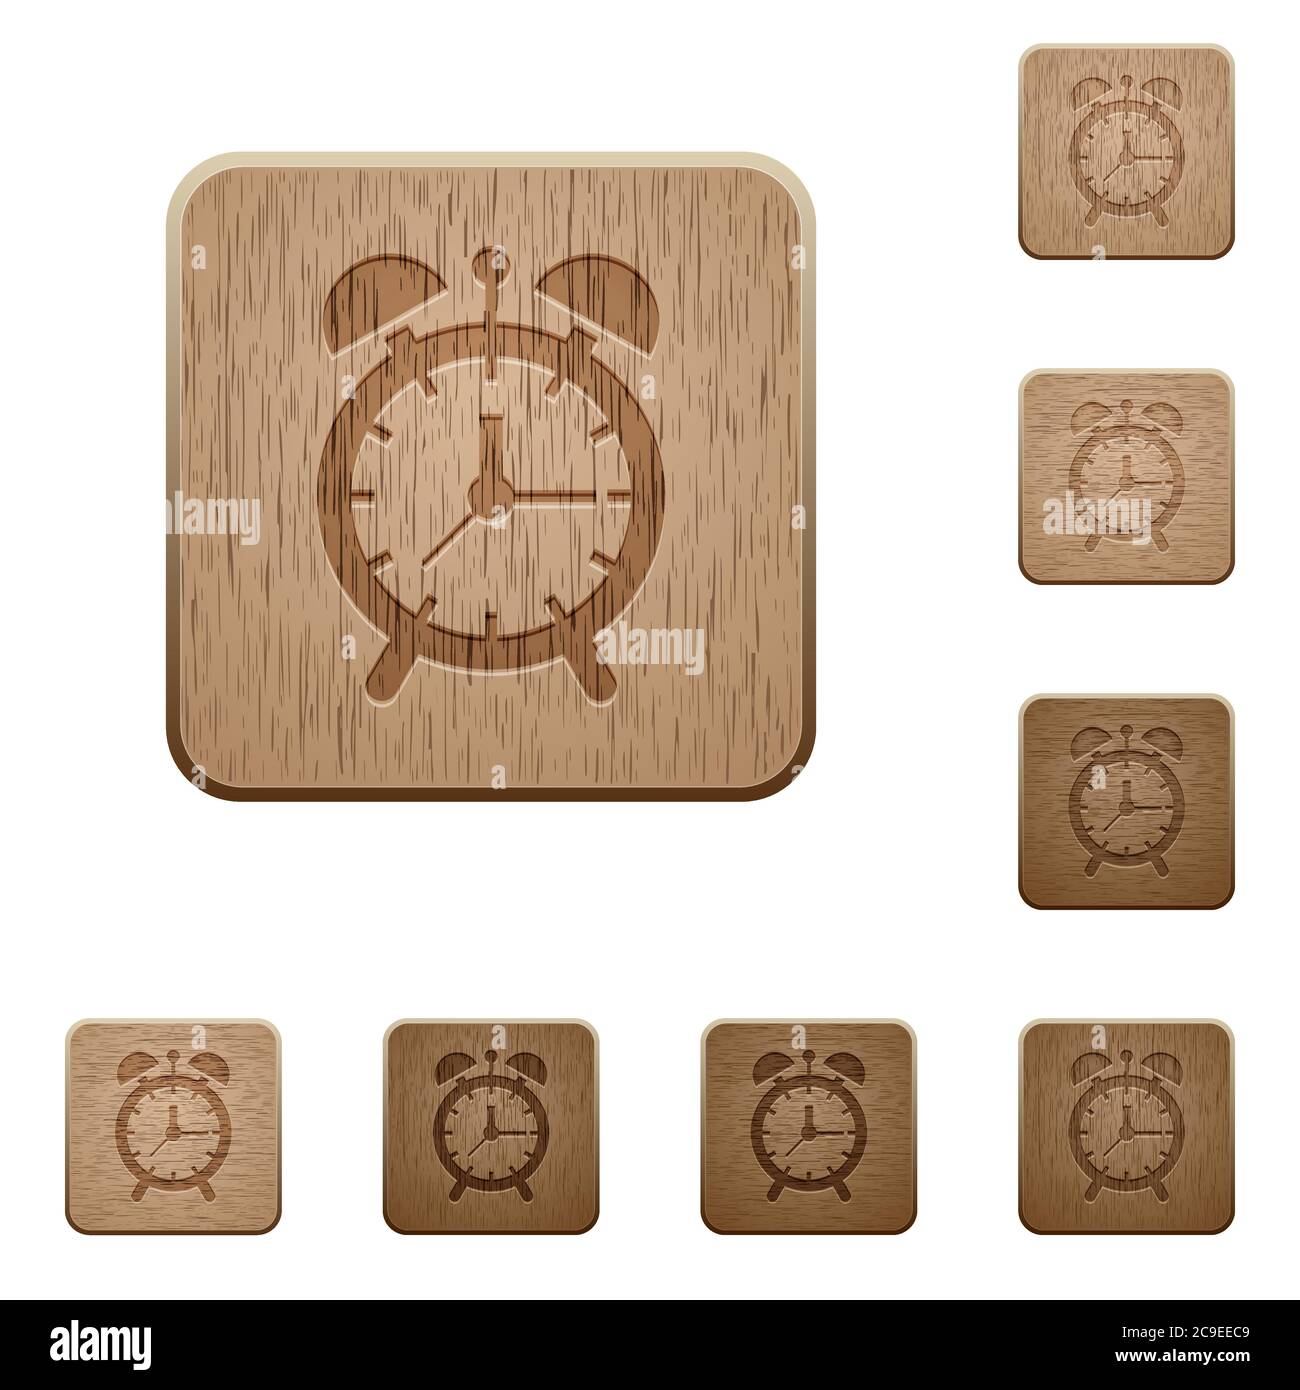 Reloj despertador de madera cuadrado